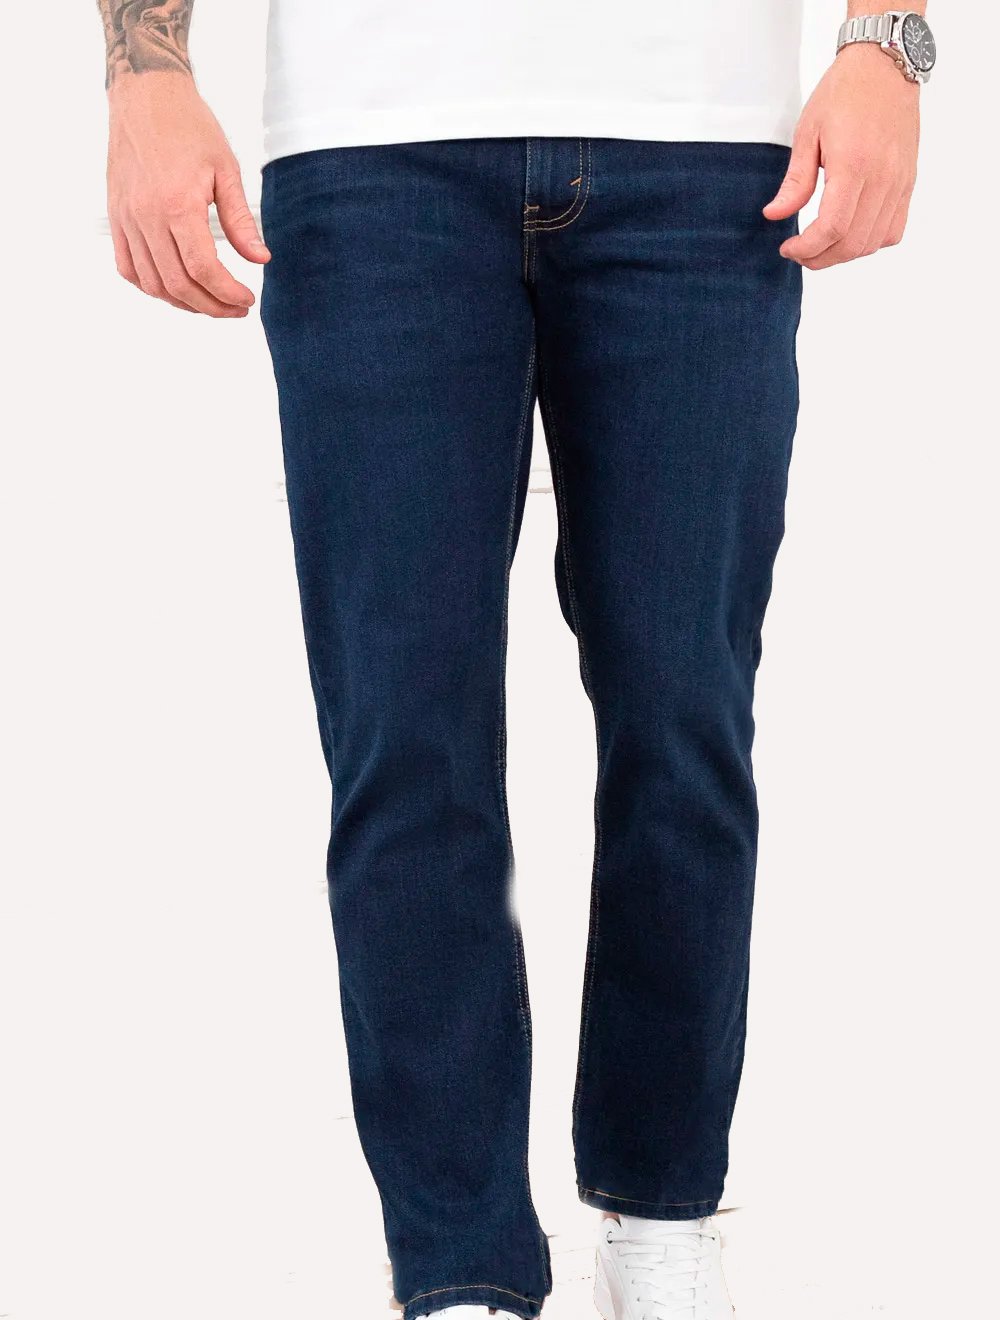 Calça Levis Jeans Masculina 511 Slim Stretch Wear Dark Blue Escura